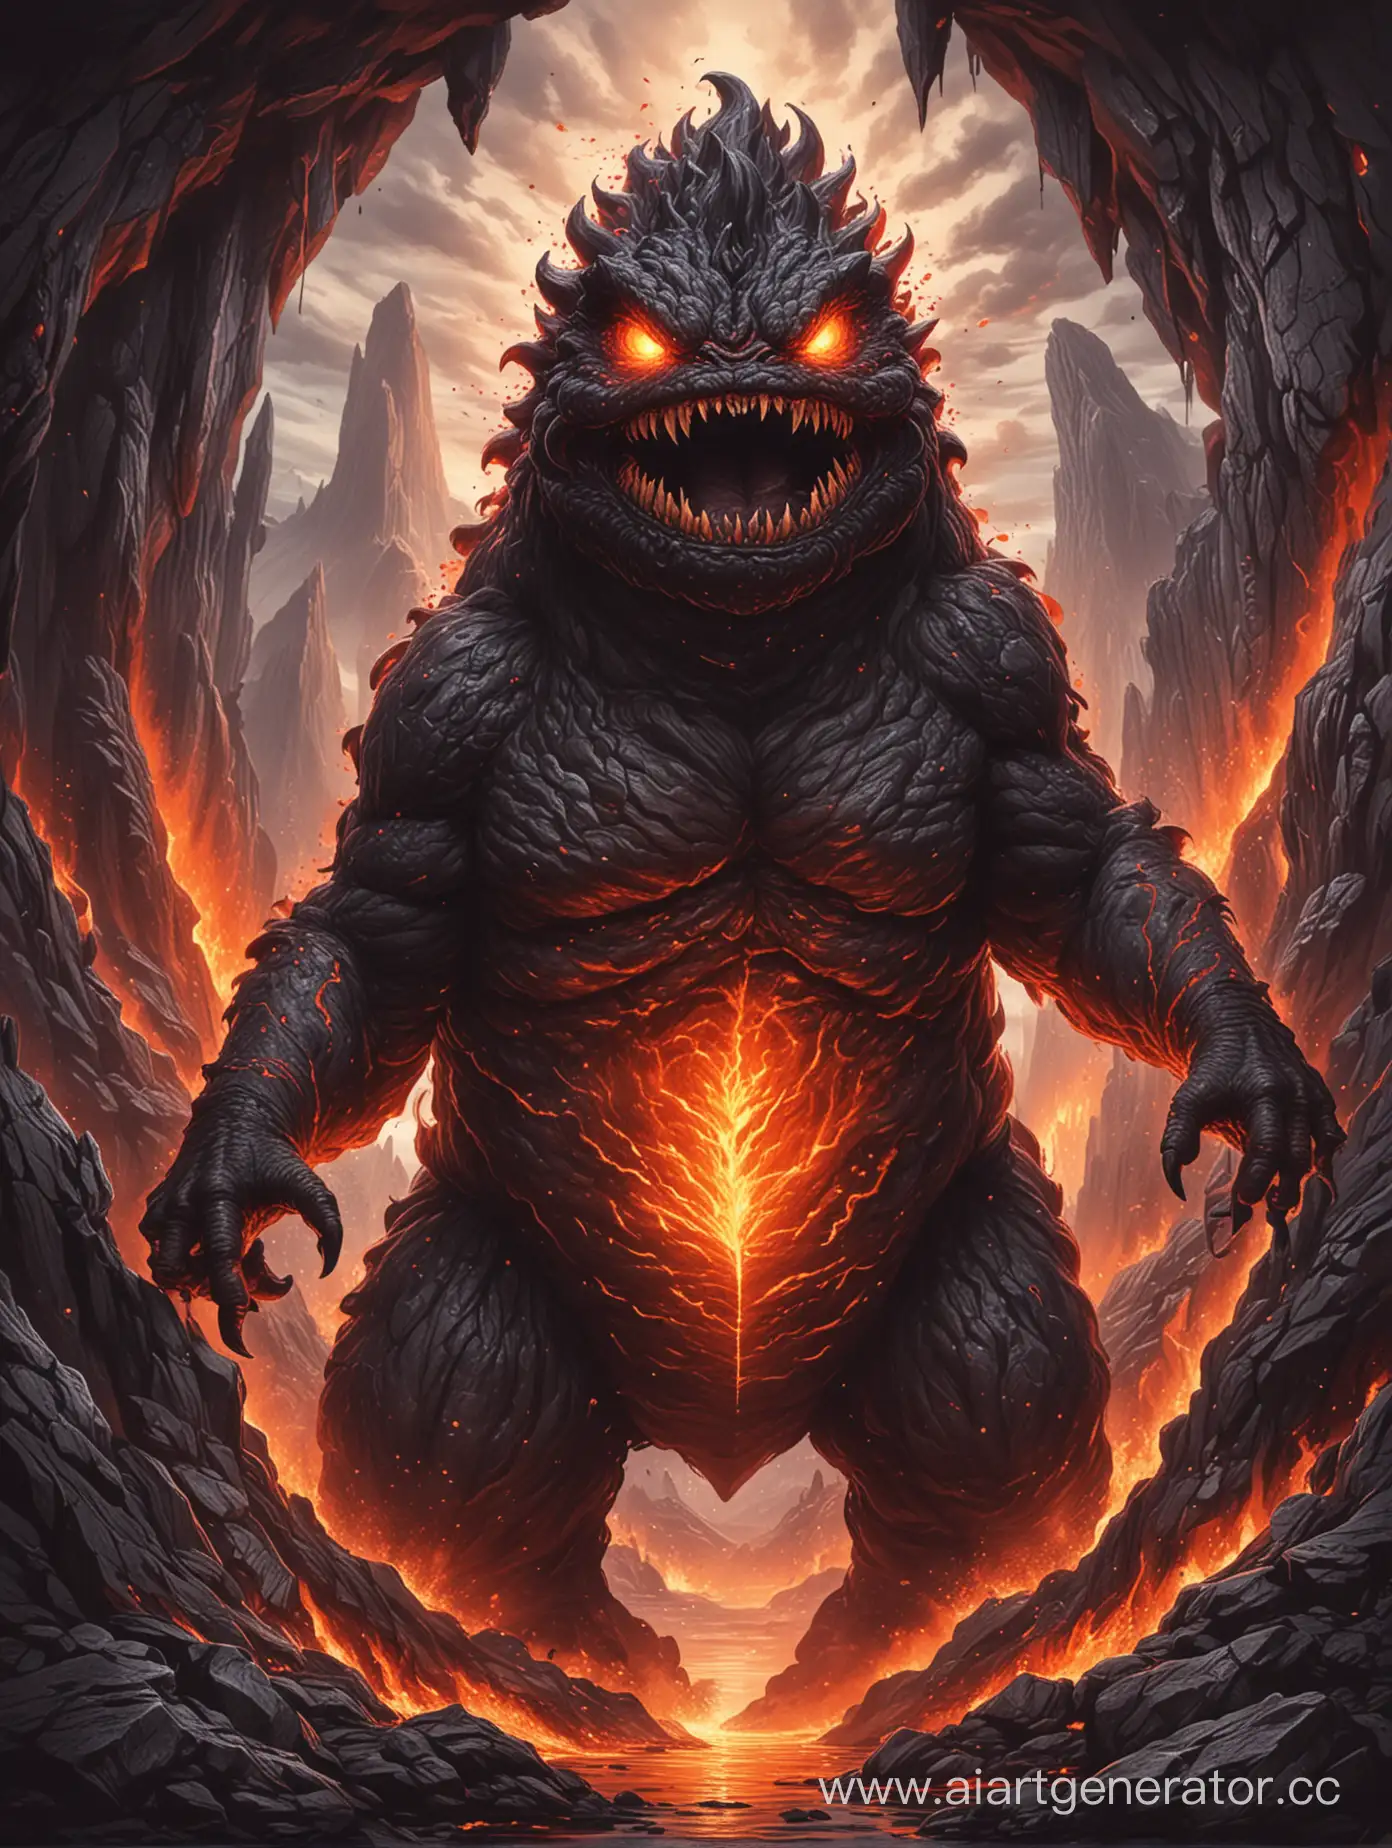 Fierce-Lava-Monster-Emerging-from-Volcanic-Depths